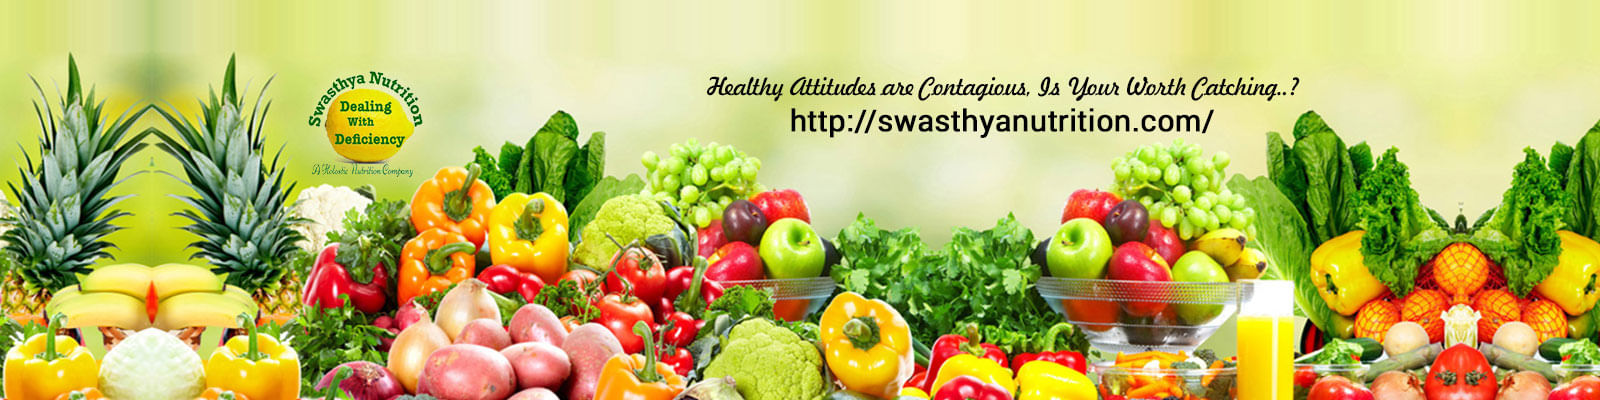 Swasthya Nutrition